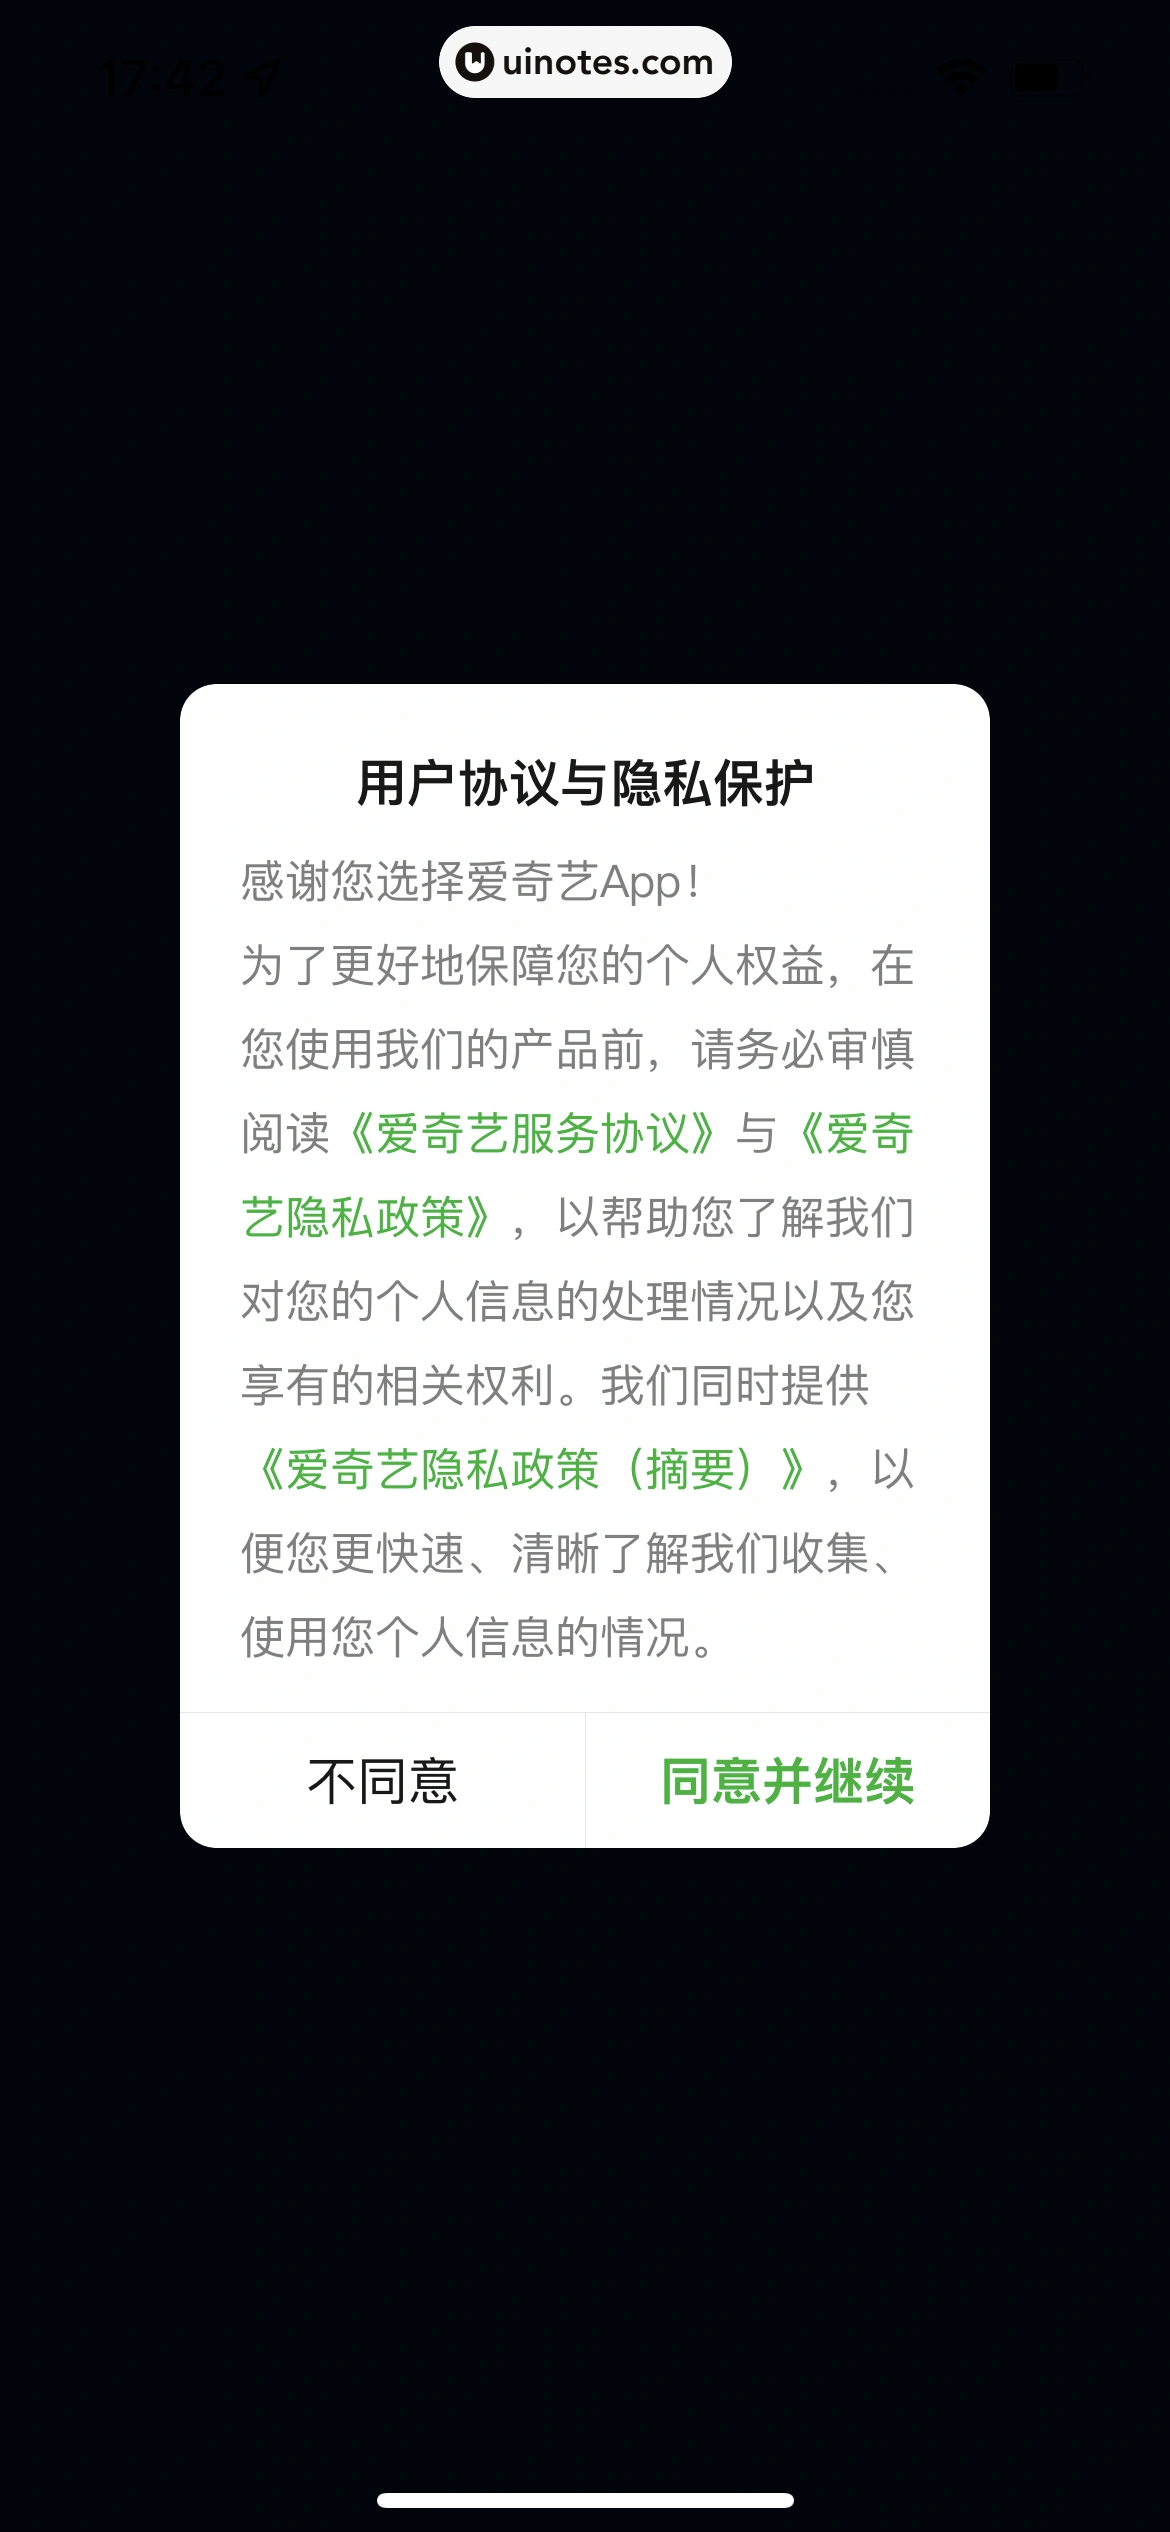 爱奇艺 App 截图 012 - UI Notes